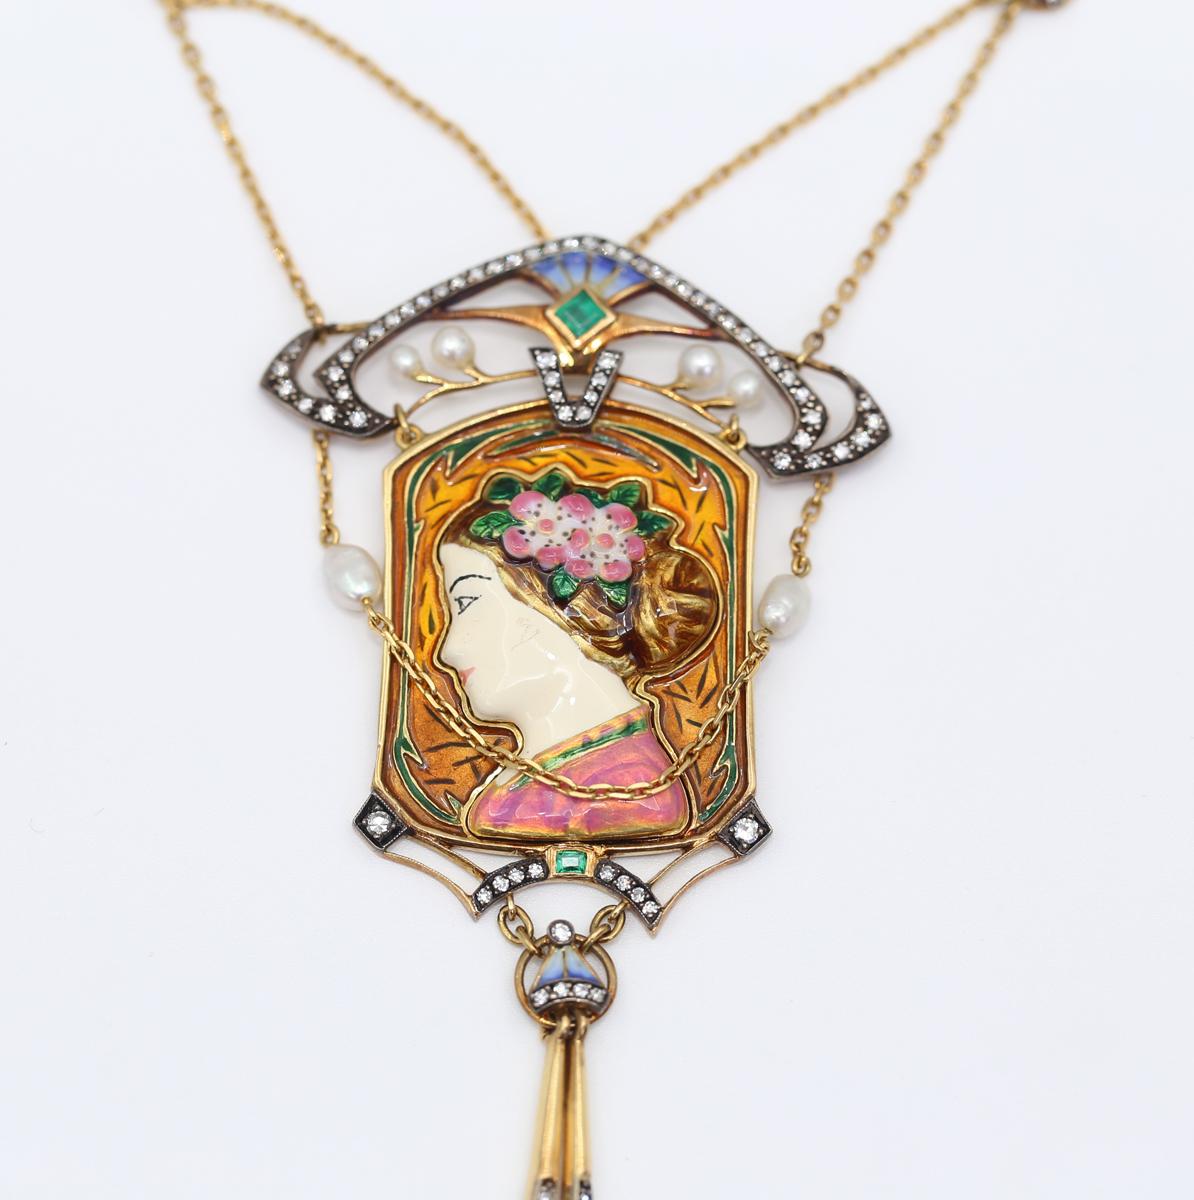 Die einzigartige 18-karätige Goldkette mit Anhänger ist von den großen Jugendstildesigns inspiriert und hat einen Hauch von asiatischem Einfluss. Mit Perlen, Diamanten und feiner farbiger Emaille.  
Anhänger aus 18 Karat Gold mit einzigartigem